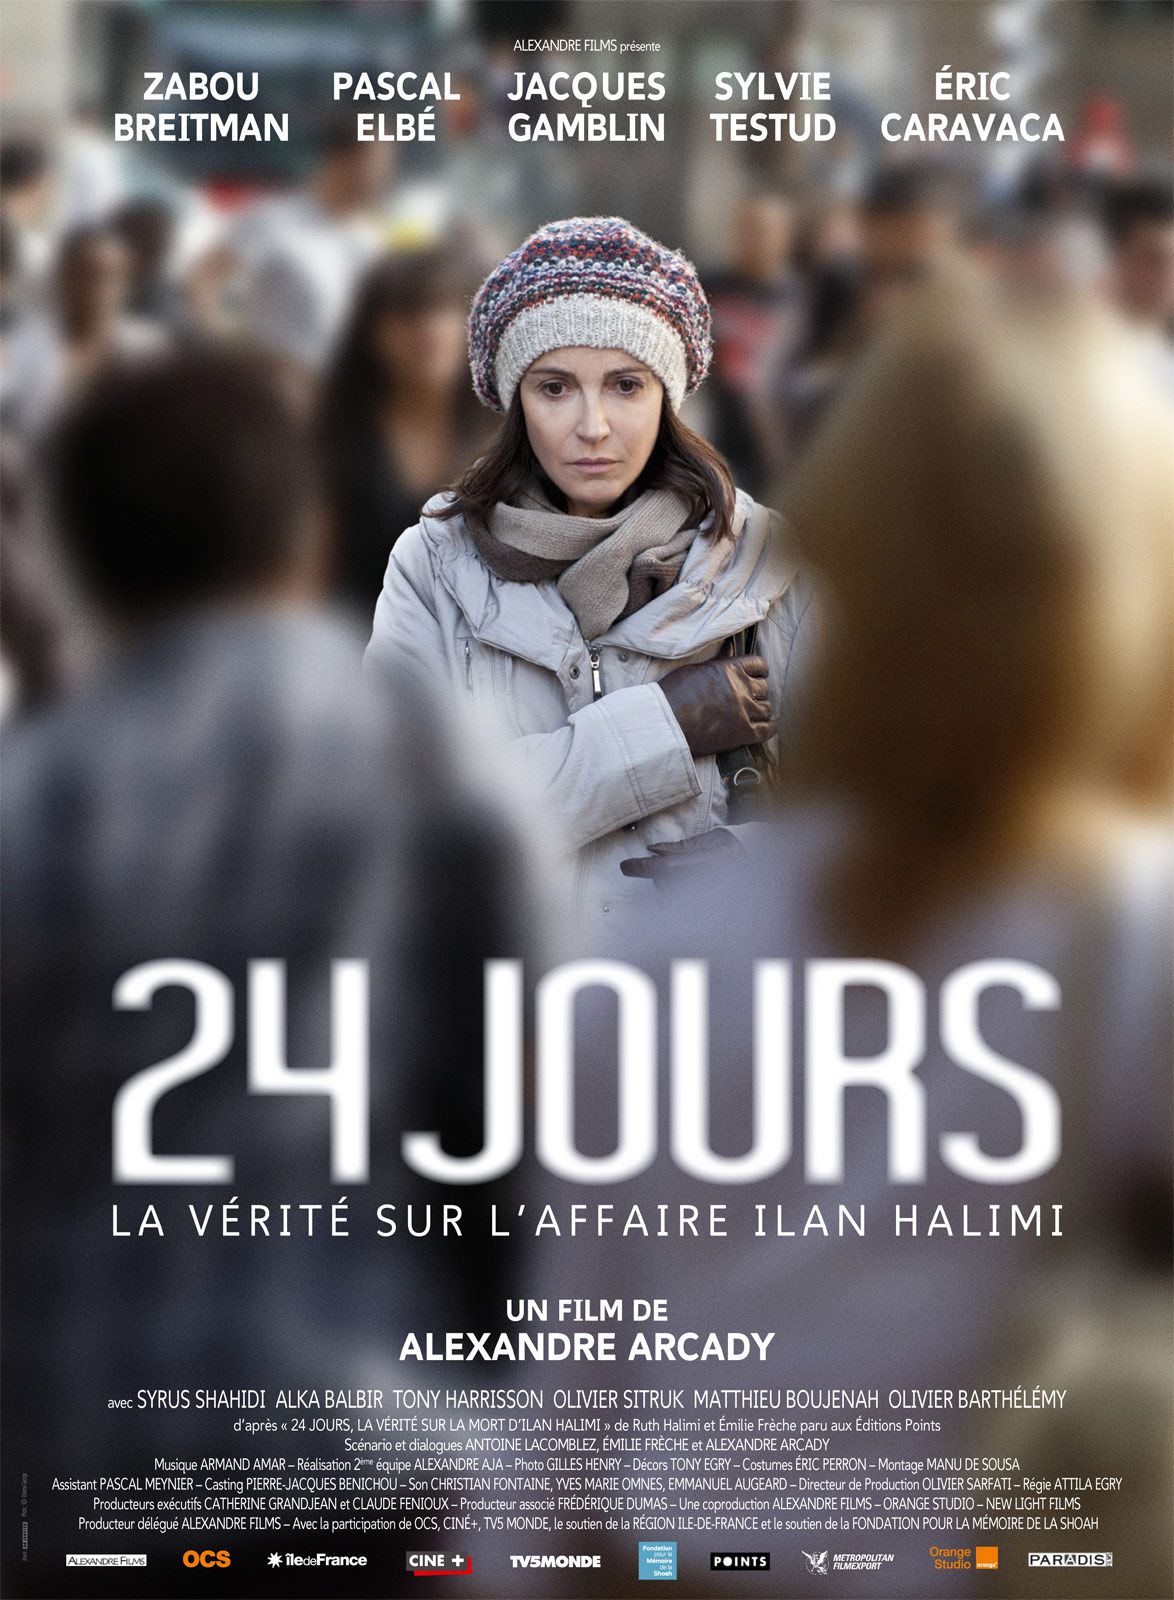 24 jours, la vérité sur l'affaire Ilan Halimi - Film (2014) streaming VF gratuit complet